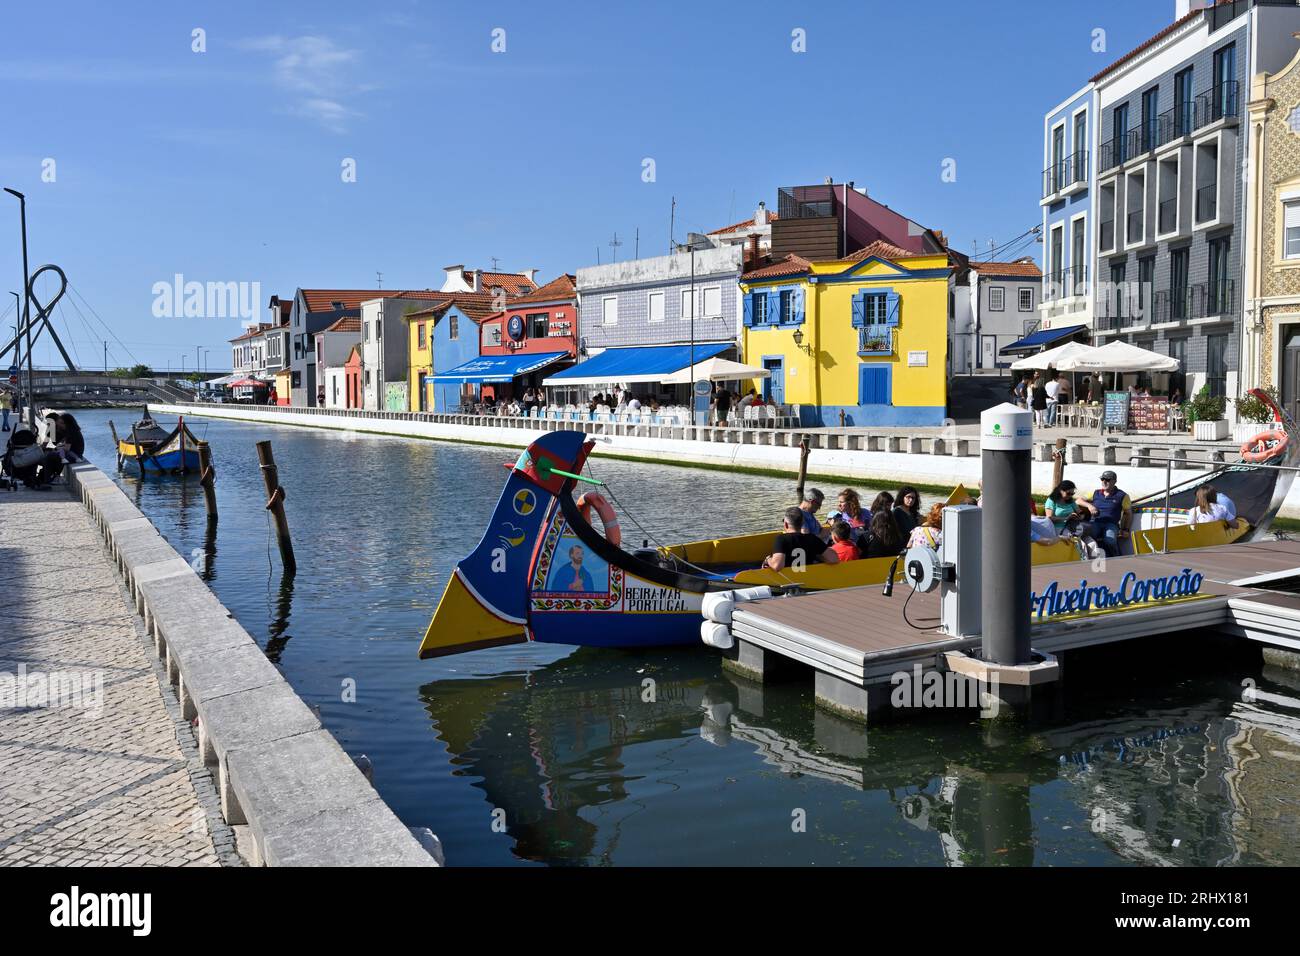 Au bout du canal avec quai flottant par Aveiro no Coração - Passeios de  Barco avec des excursions en bateau Moliceiro, Aveiro, Portugal Photo Stock  - Alamy